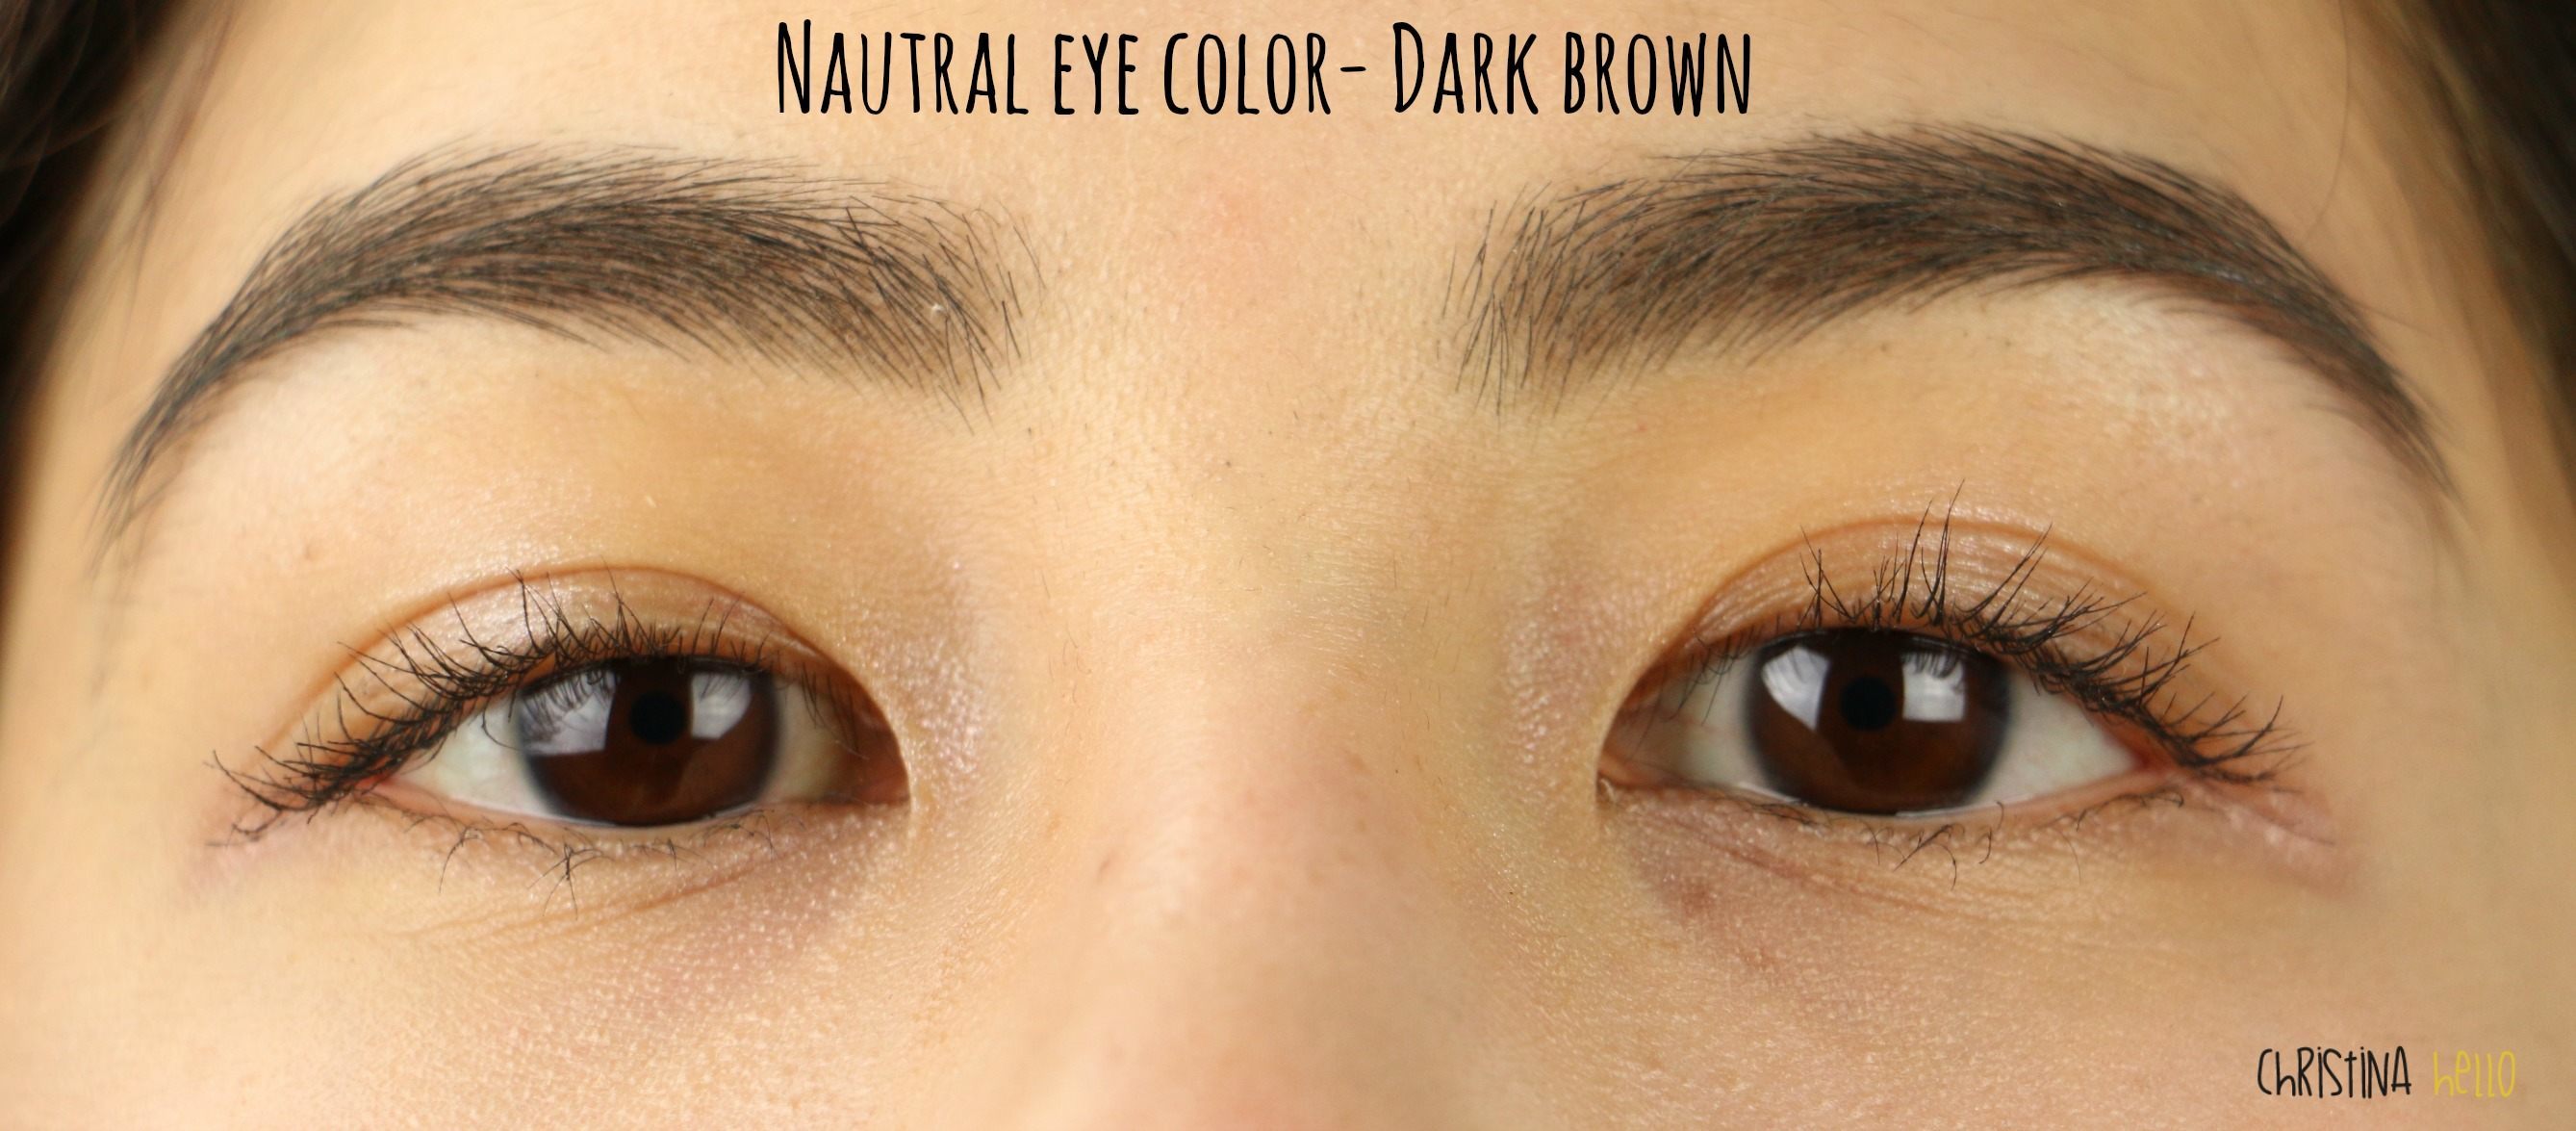 freshlook colorblends sterling grey on dark brown eyes